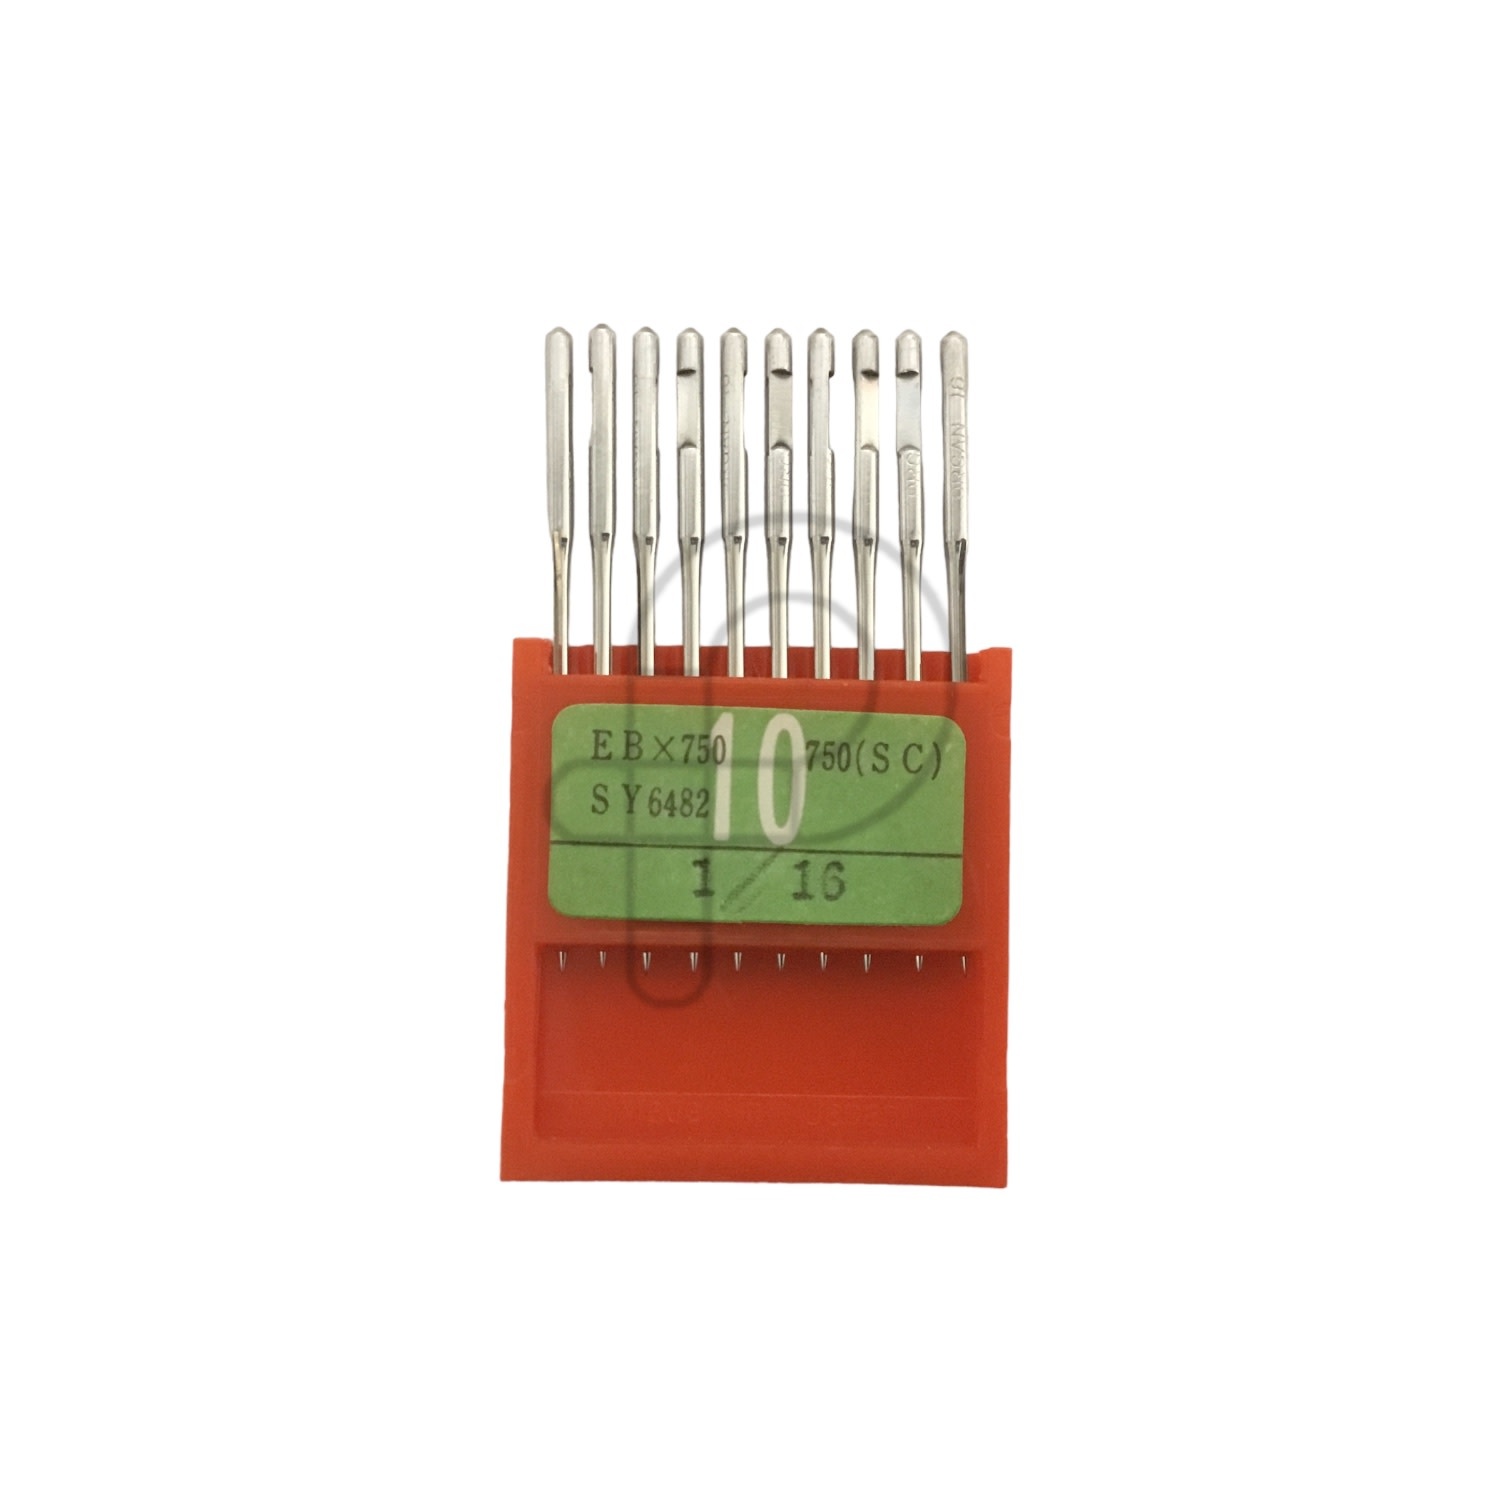 Organ Industrial needle EBX750 size 16, pkg 10